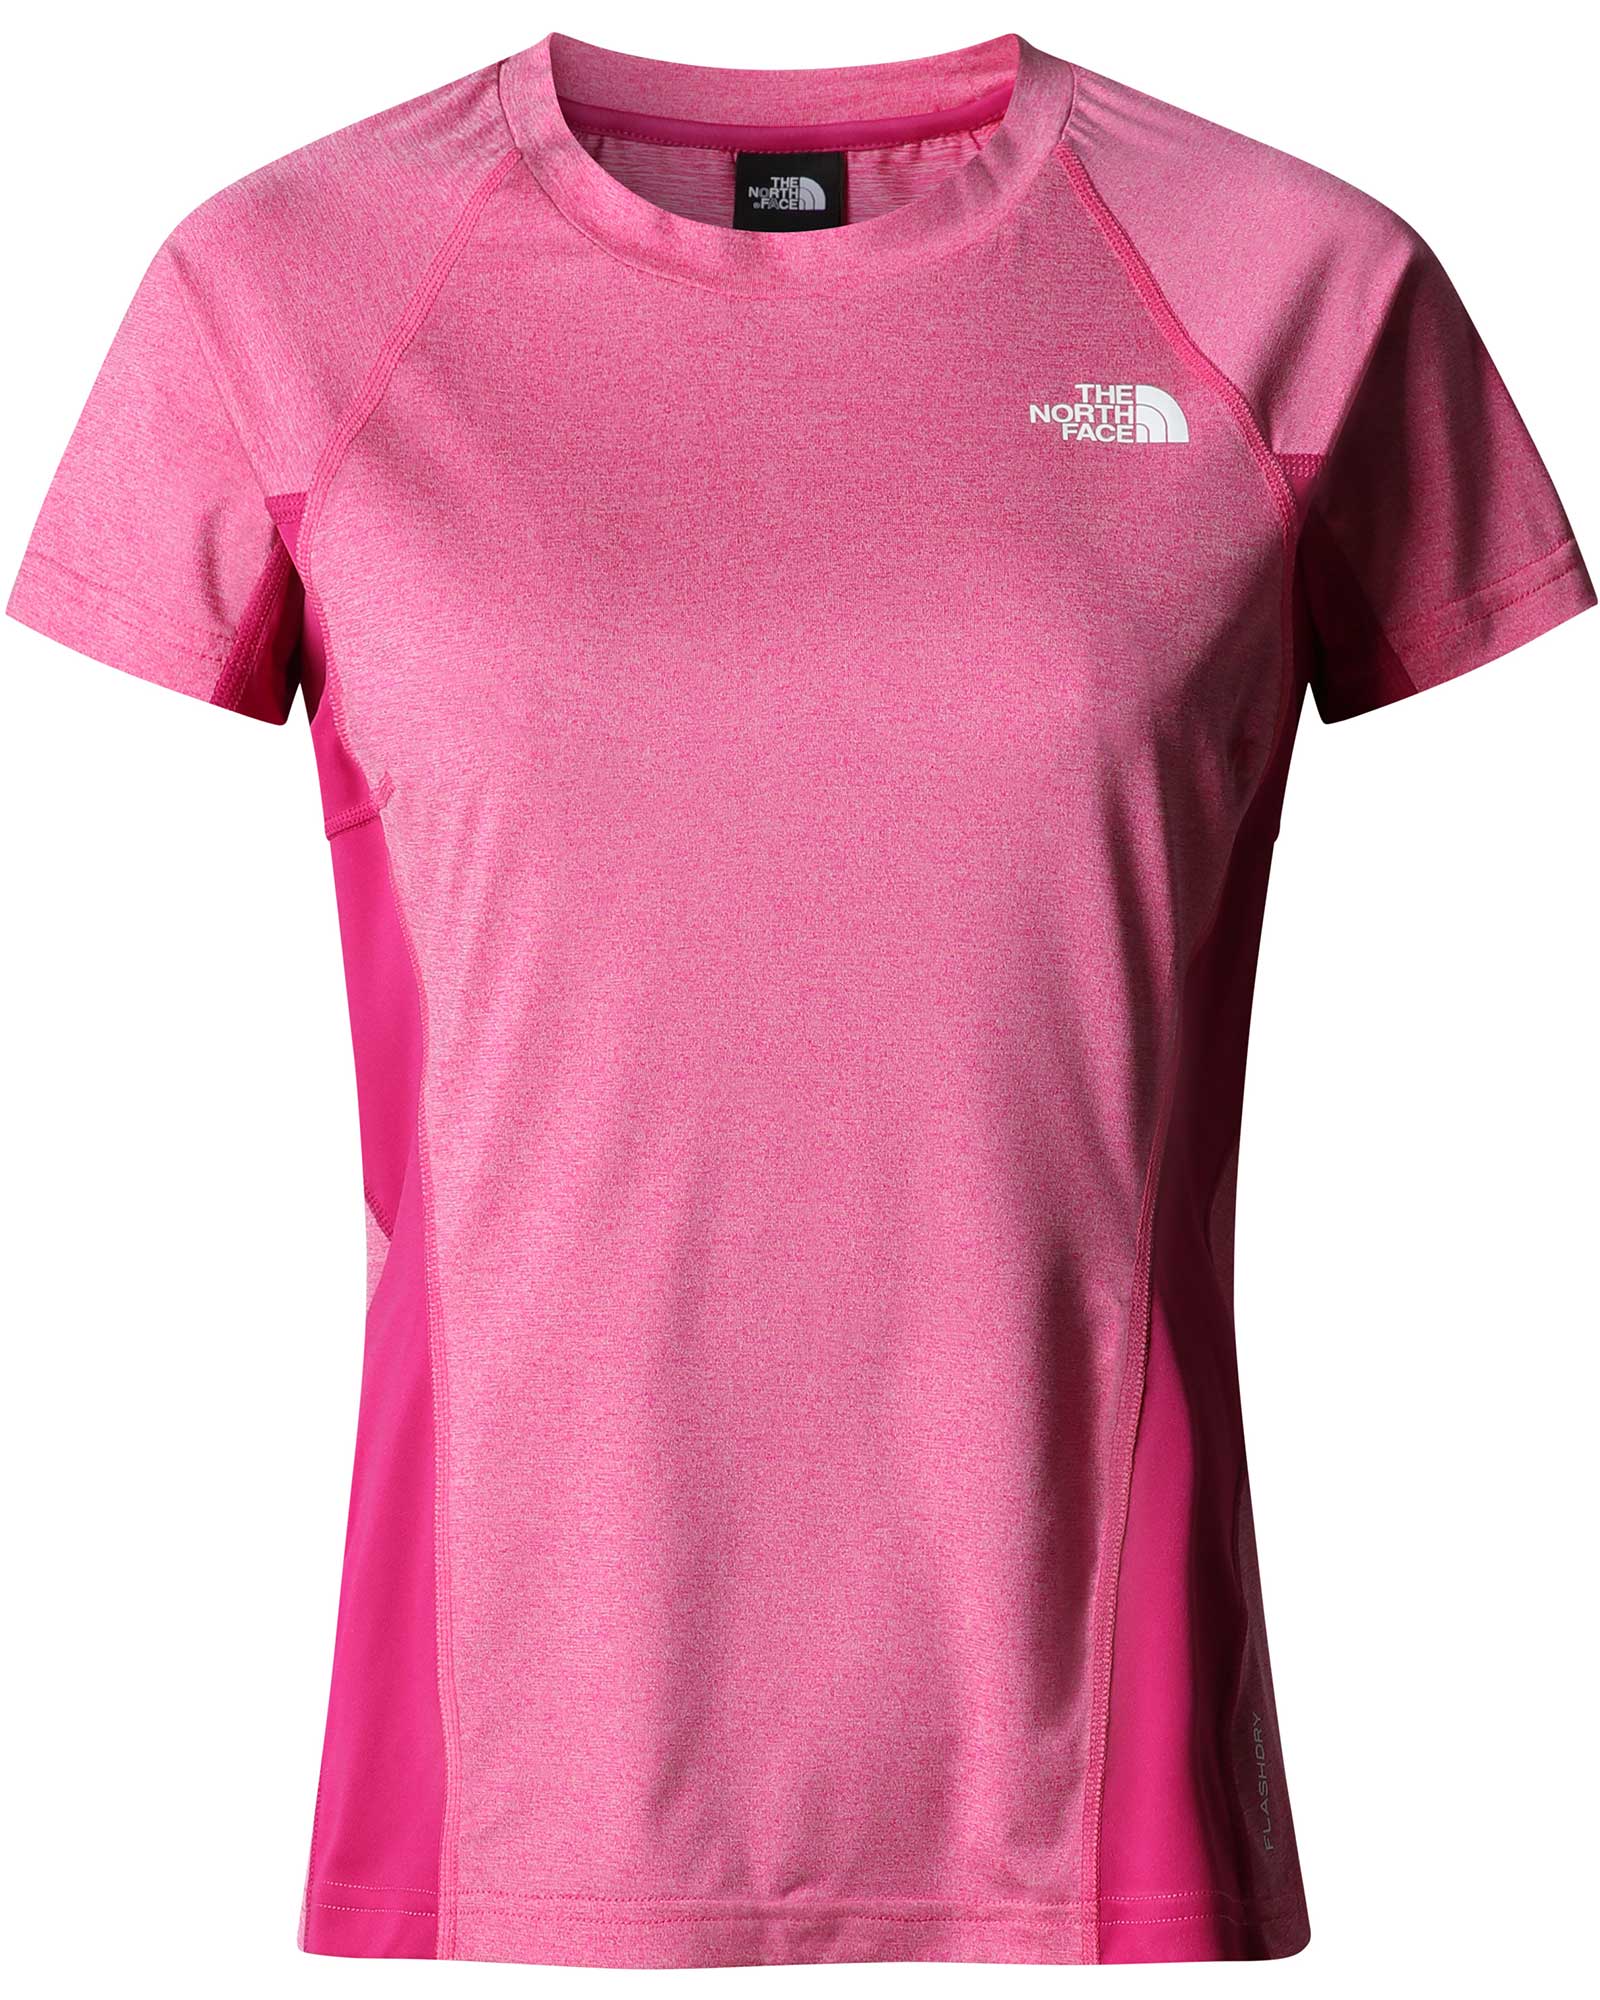 The North Face AO Women’s T Shirt - Fuschia Pink XS